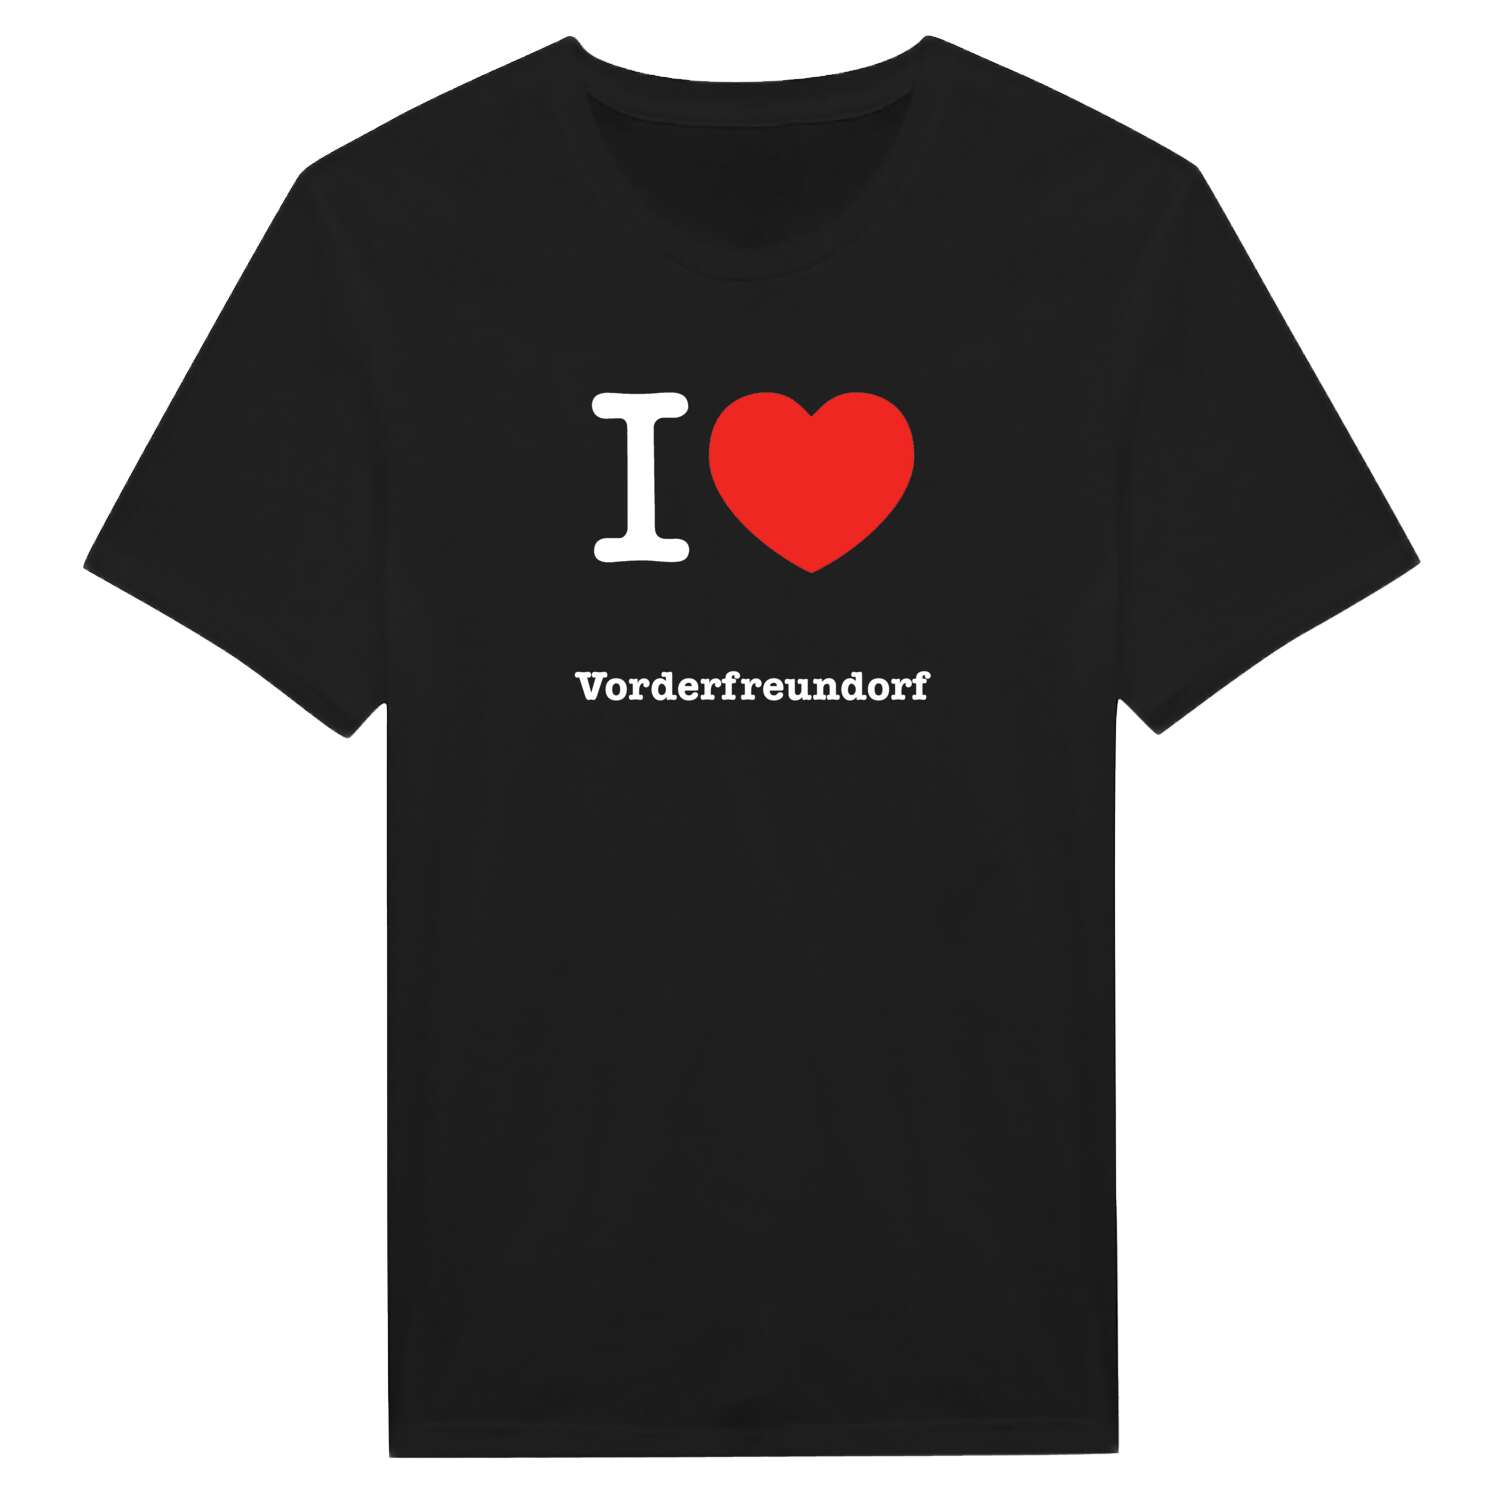 Vorderfreundorf T-Shirt »I love«